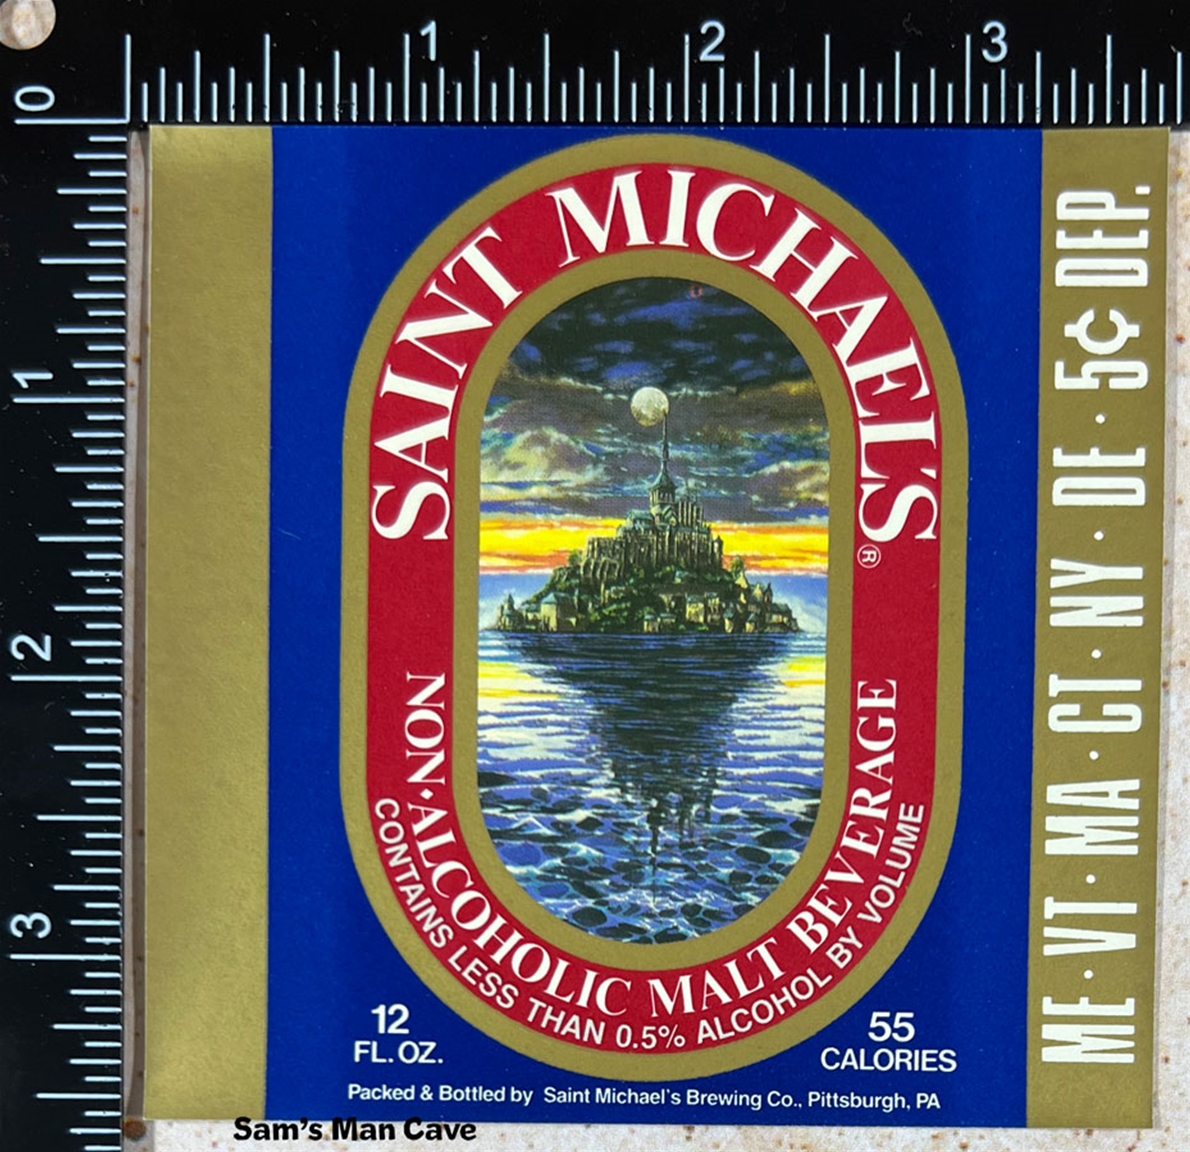 Saint Michael's Malt Beverage Label